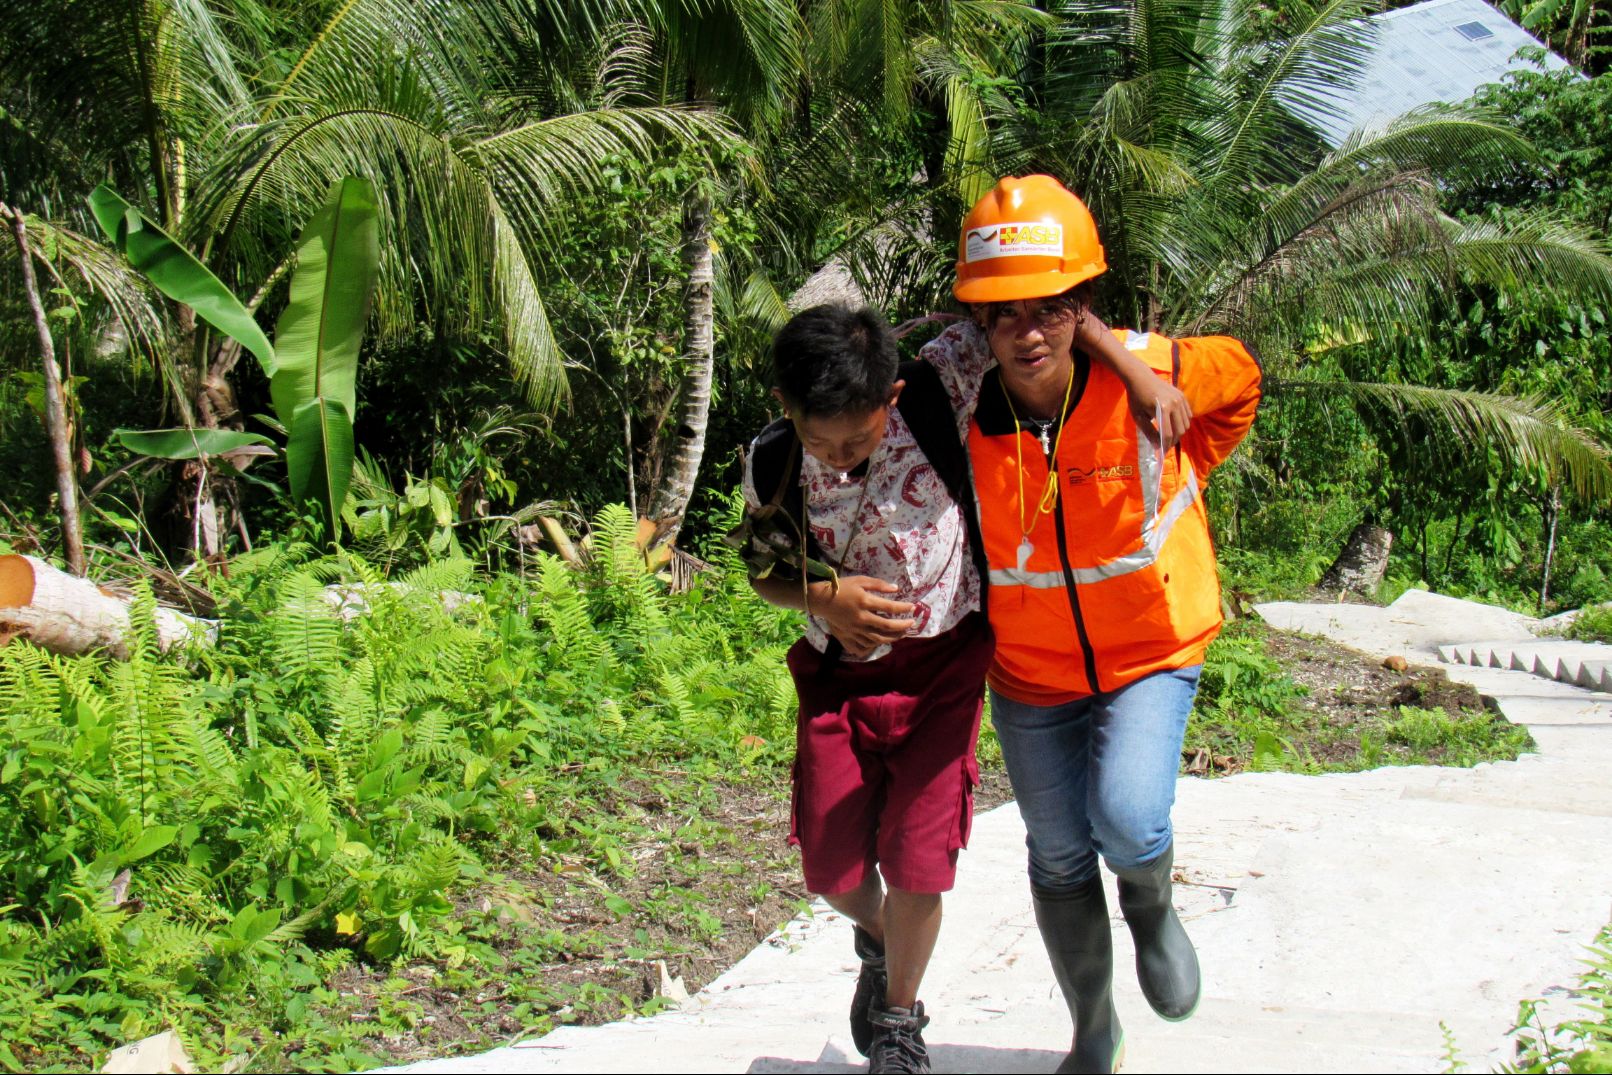 Ein Helfer hilft einem gehbehinderten Mann, sich vor einem Erdbeben in Sicherheit zu bringen - bei einer Übung auf den Mentawai-Inseln